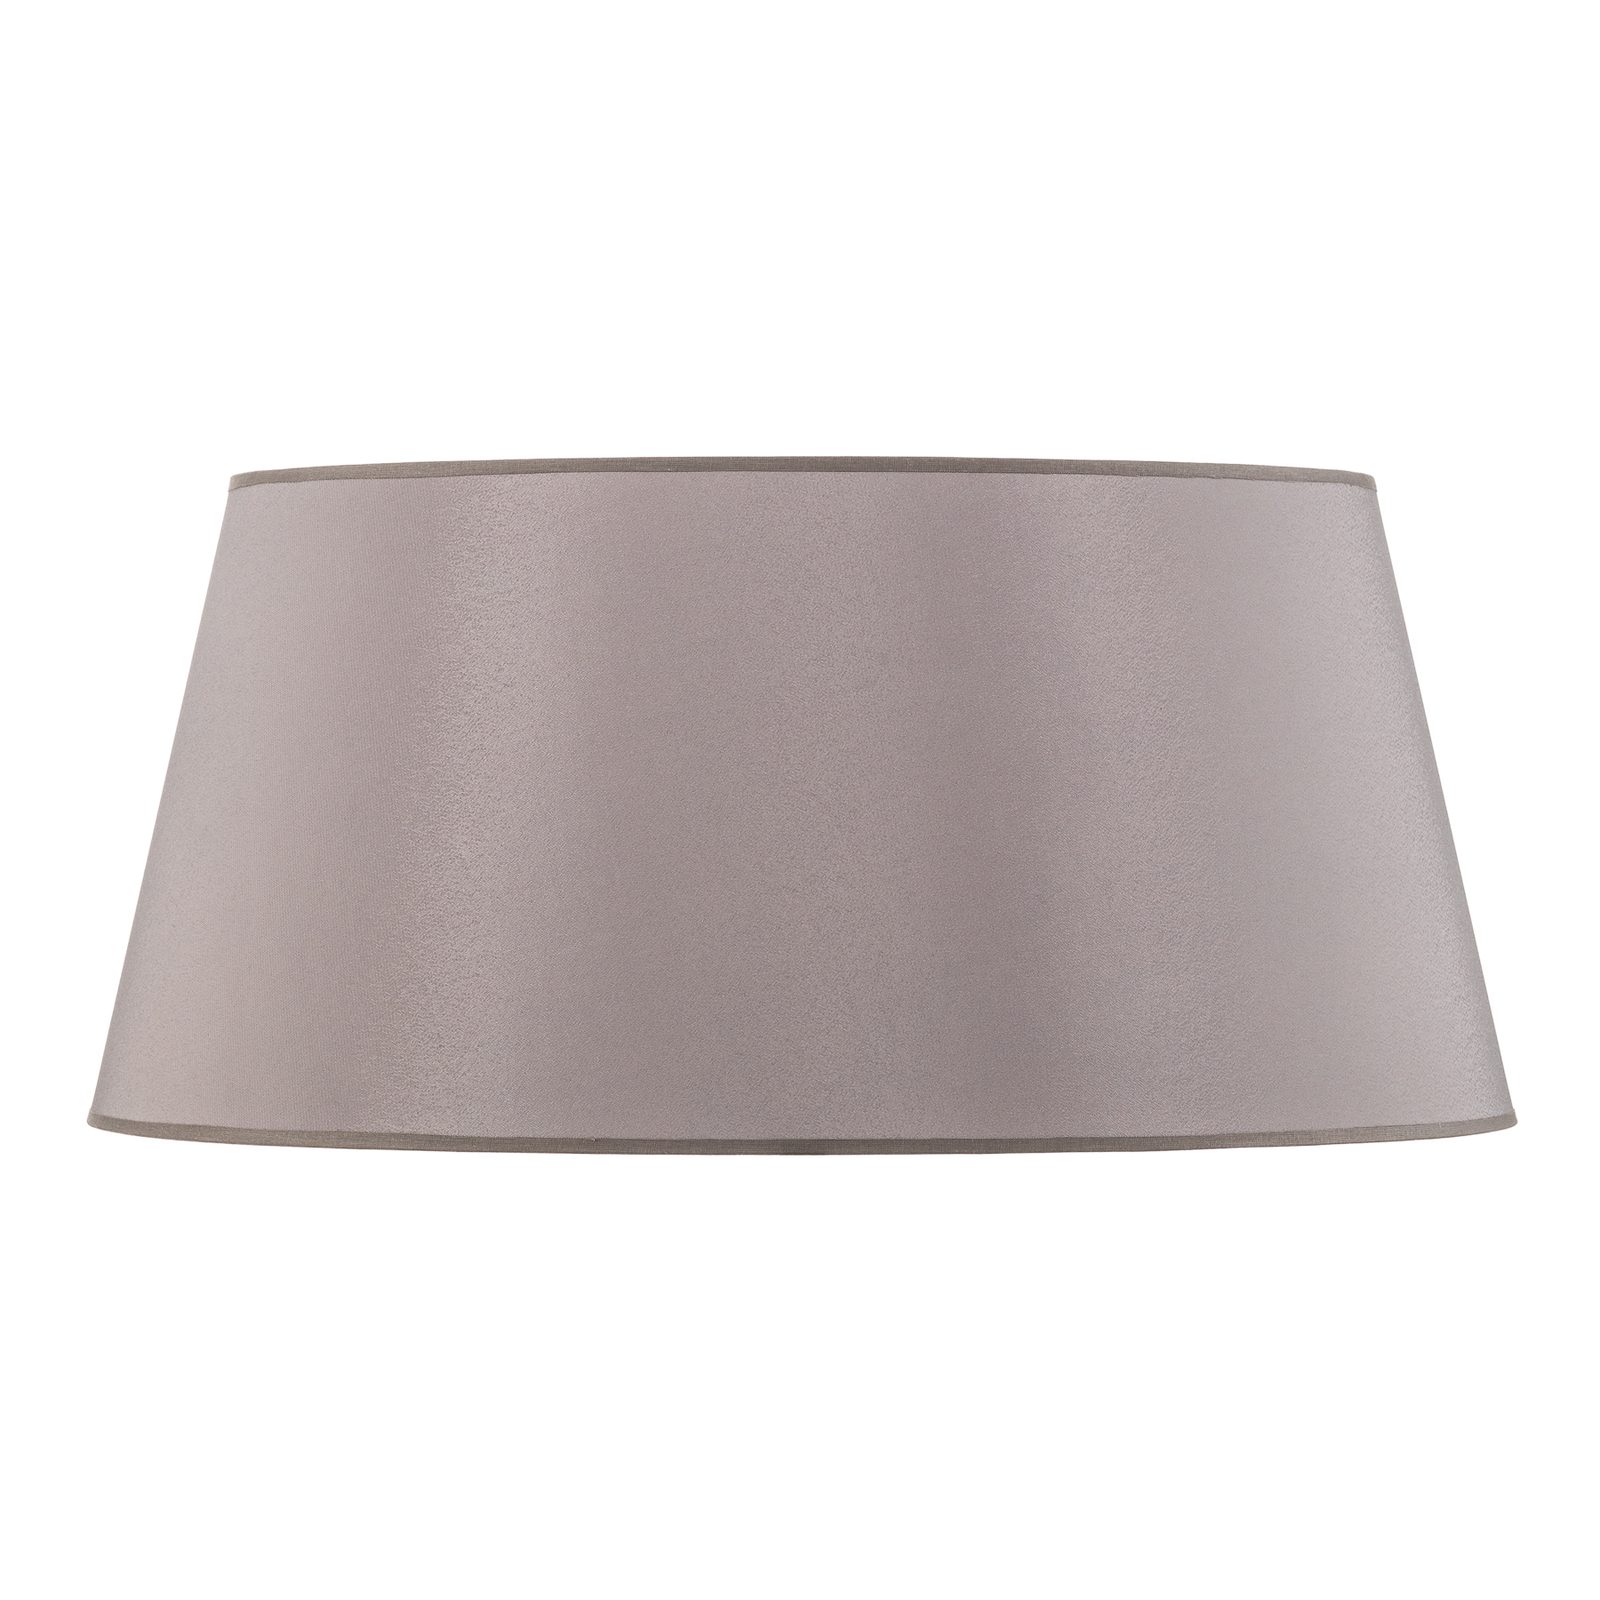 Cone lampshade height 25.5 cm, grey/white chintz